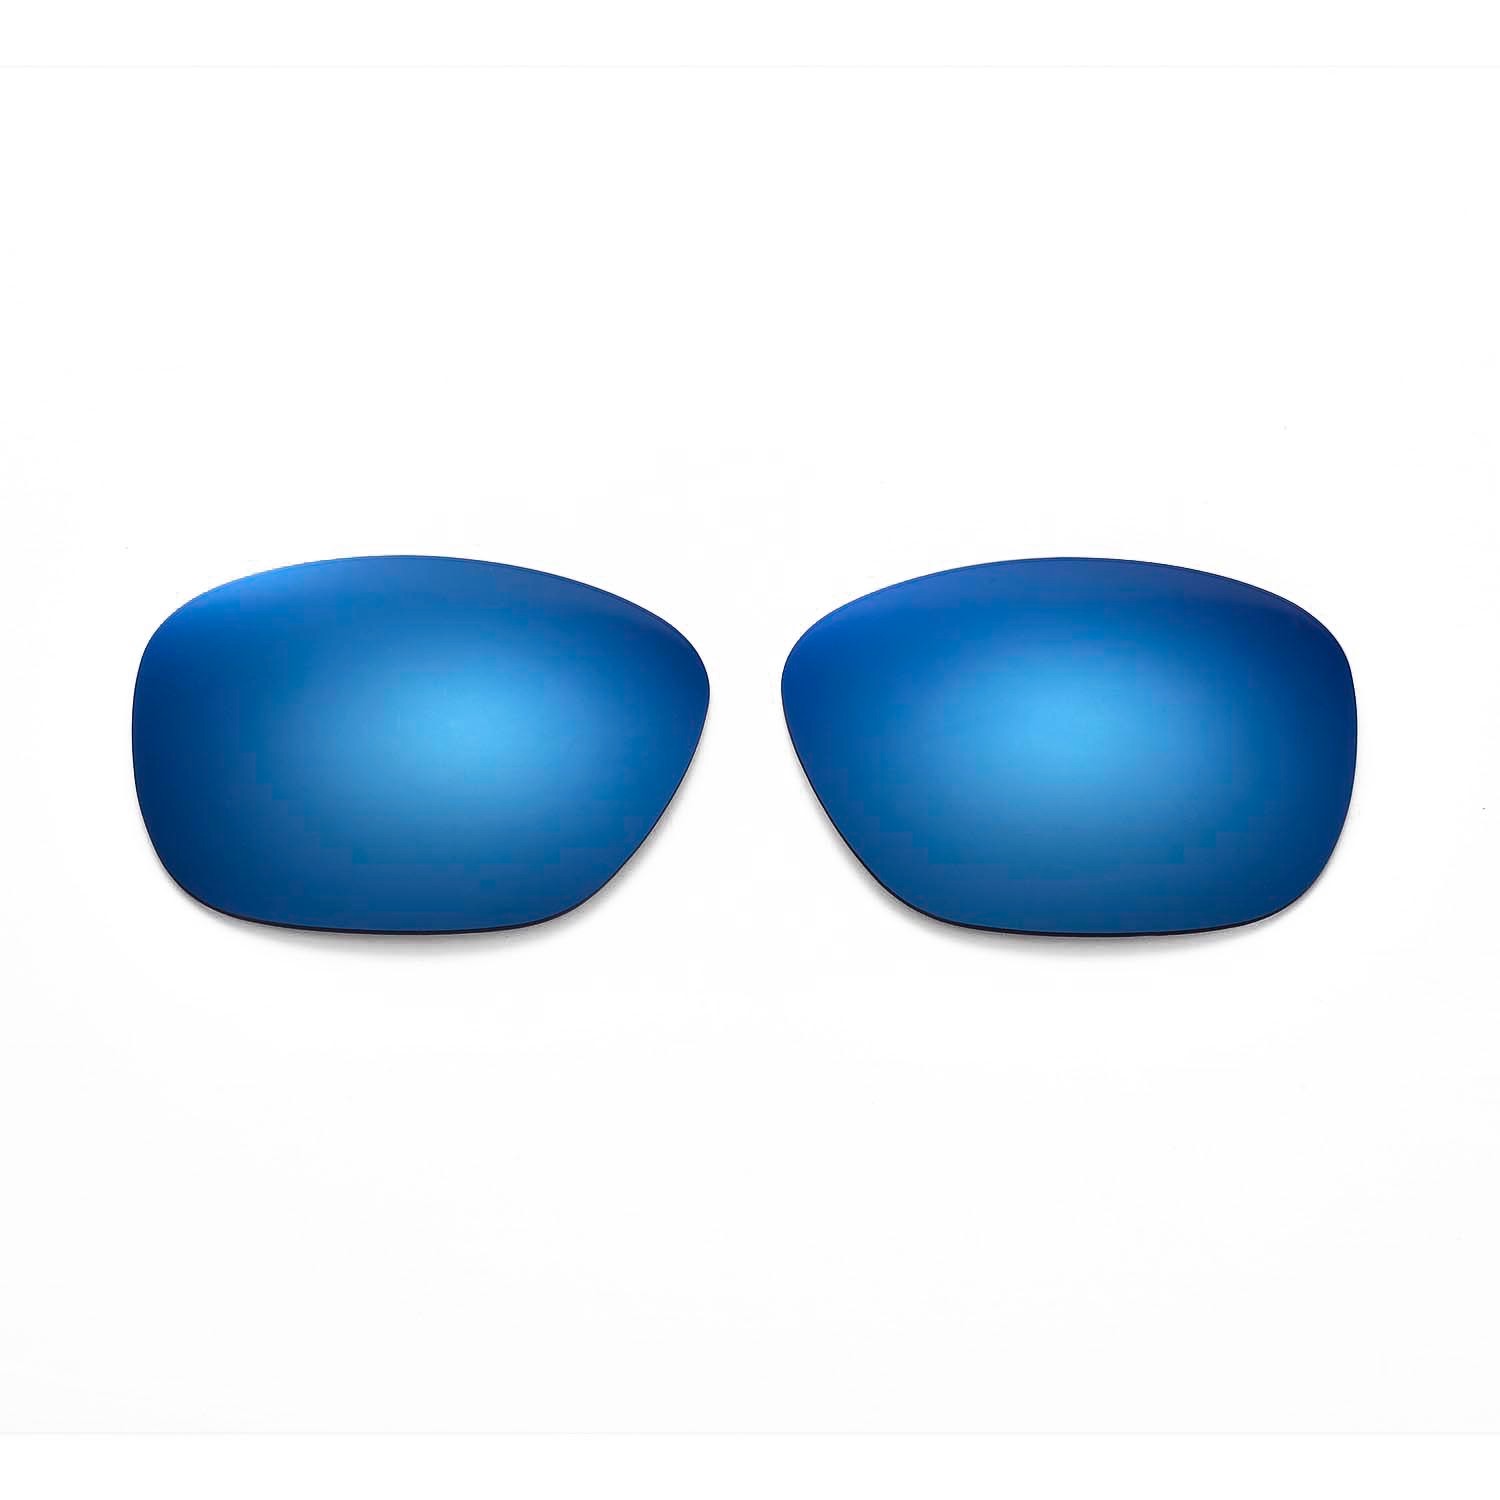 2021 pc lens glasses frame lenses colorful sunglasses lens